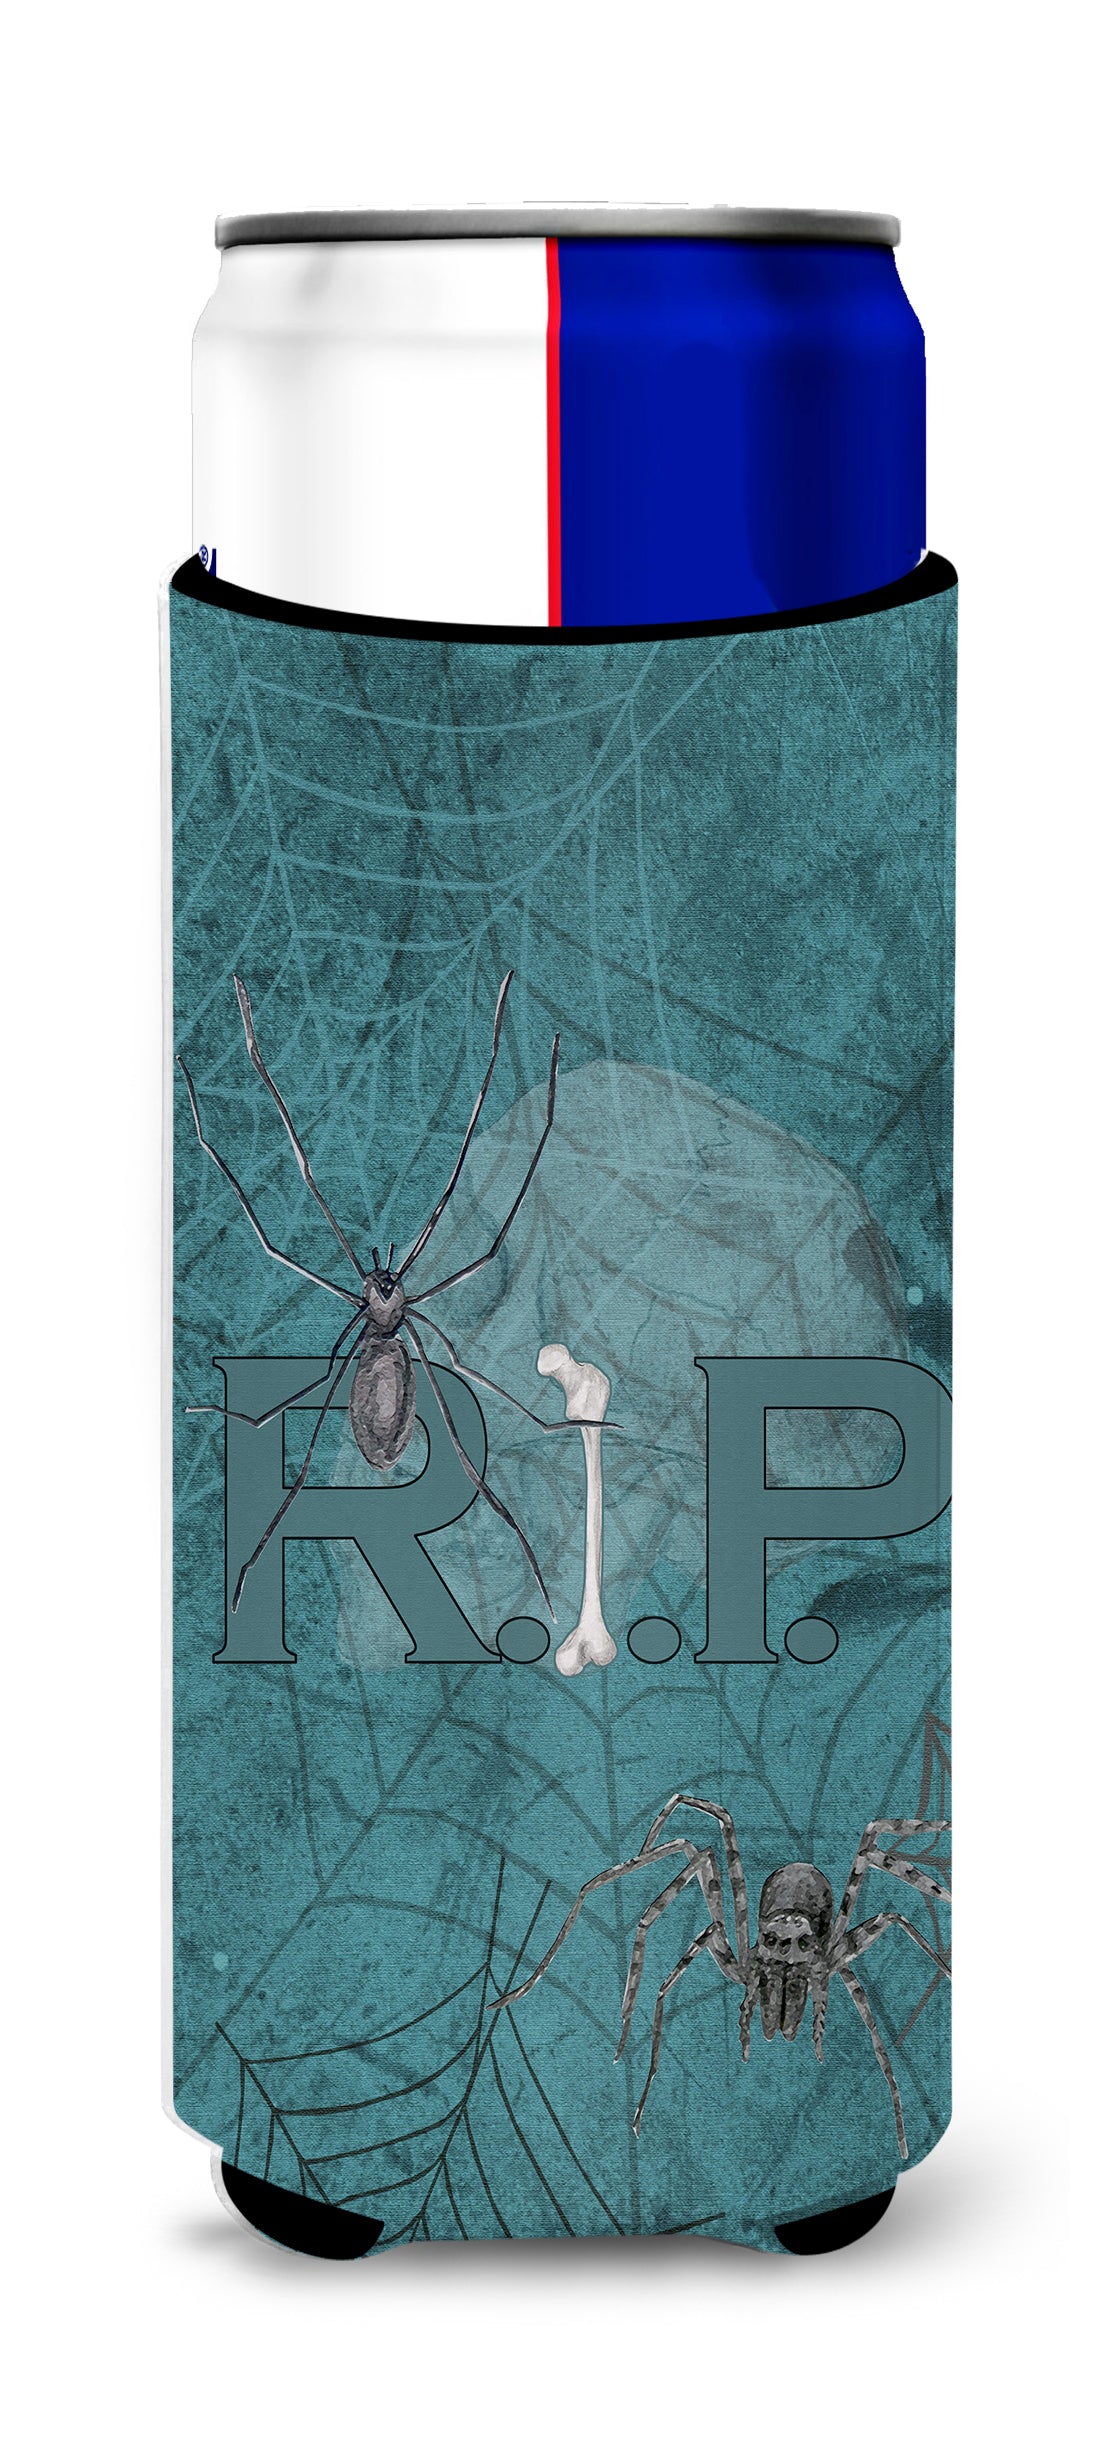 RIP Rest in Peace avec toile d'araignée Halloween Ultra Beverage Insulators pour canettes minces SB3004MUK